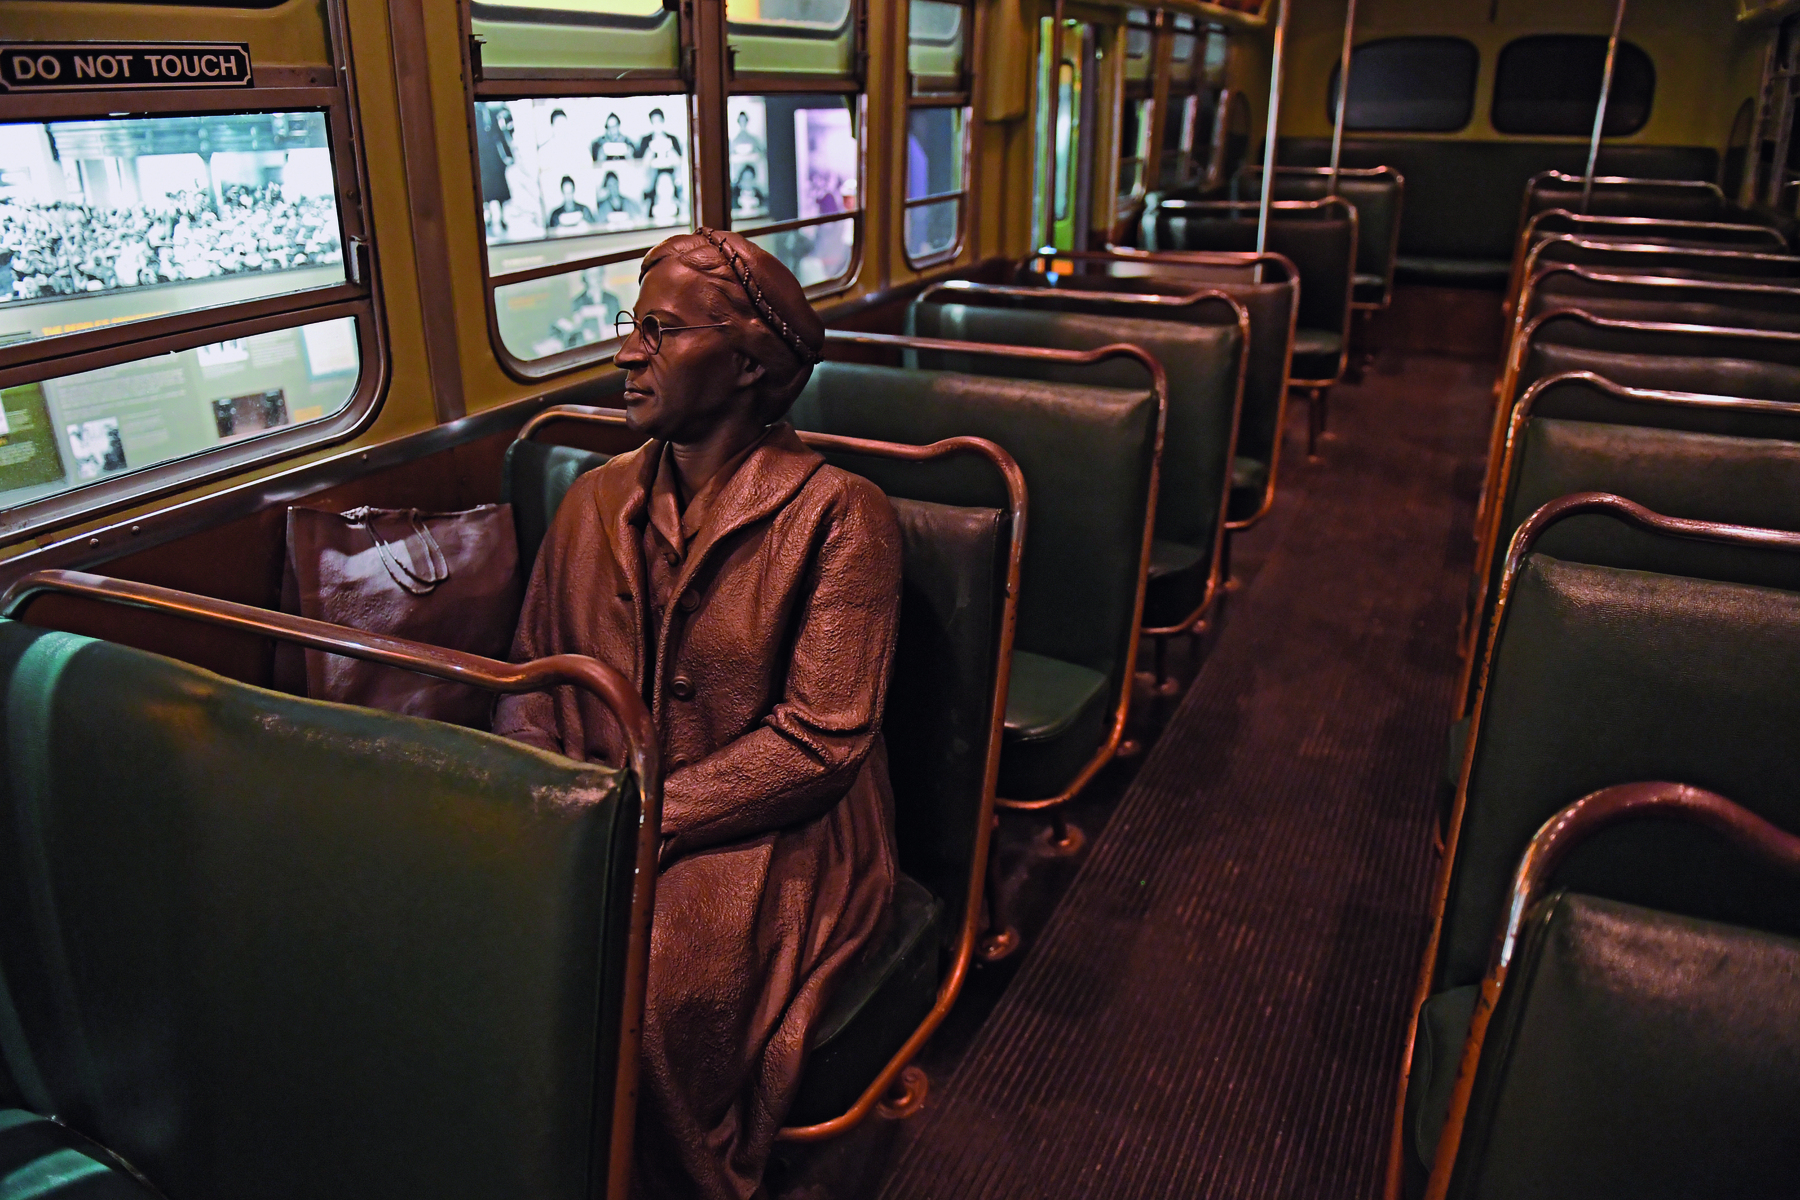 Fotografia. Escultura feita de metal representando uma mulher sentada sobre um banco de um ônibus. A escultura está dentro de um ônibus antigo, com bancos para duas pessoas com estofado verde escuro e piso de madeira escura.